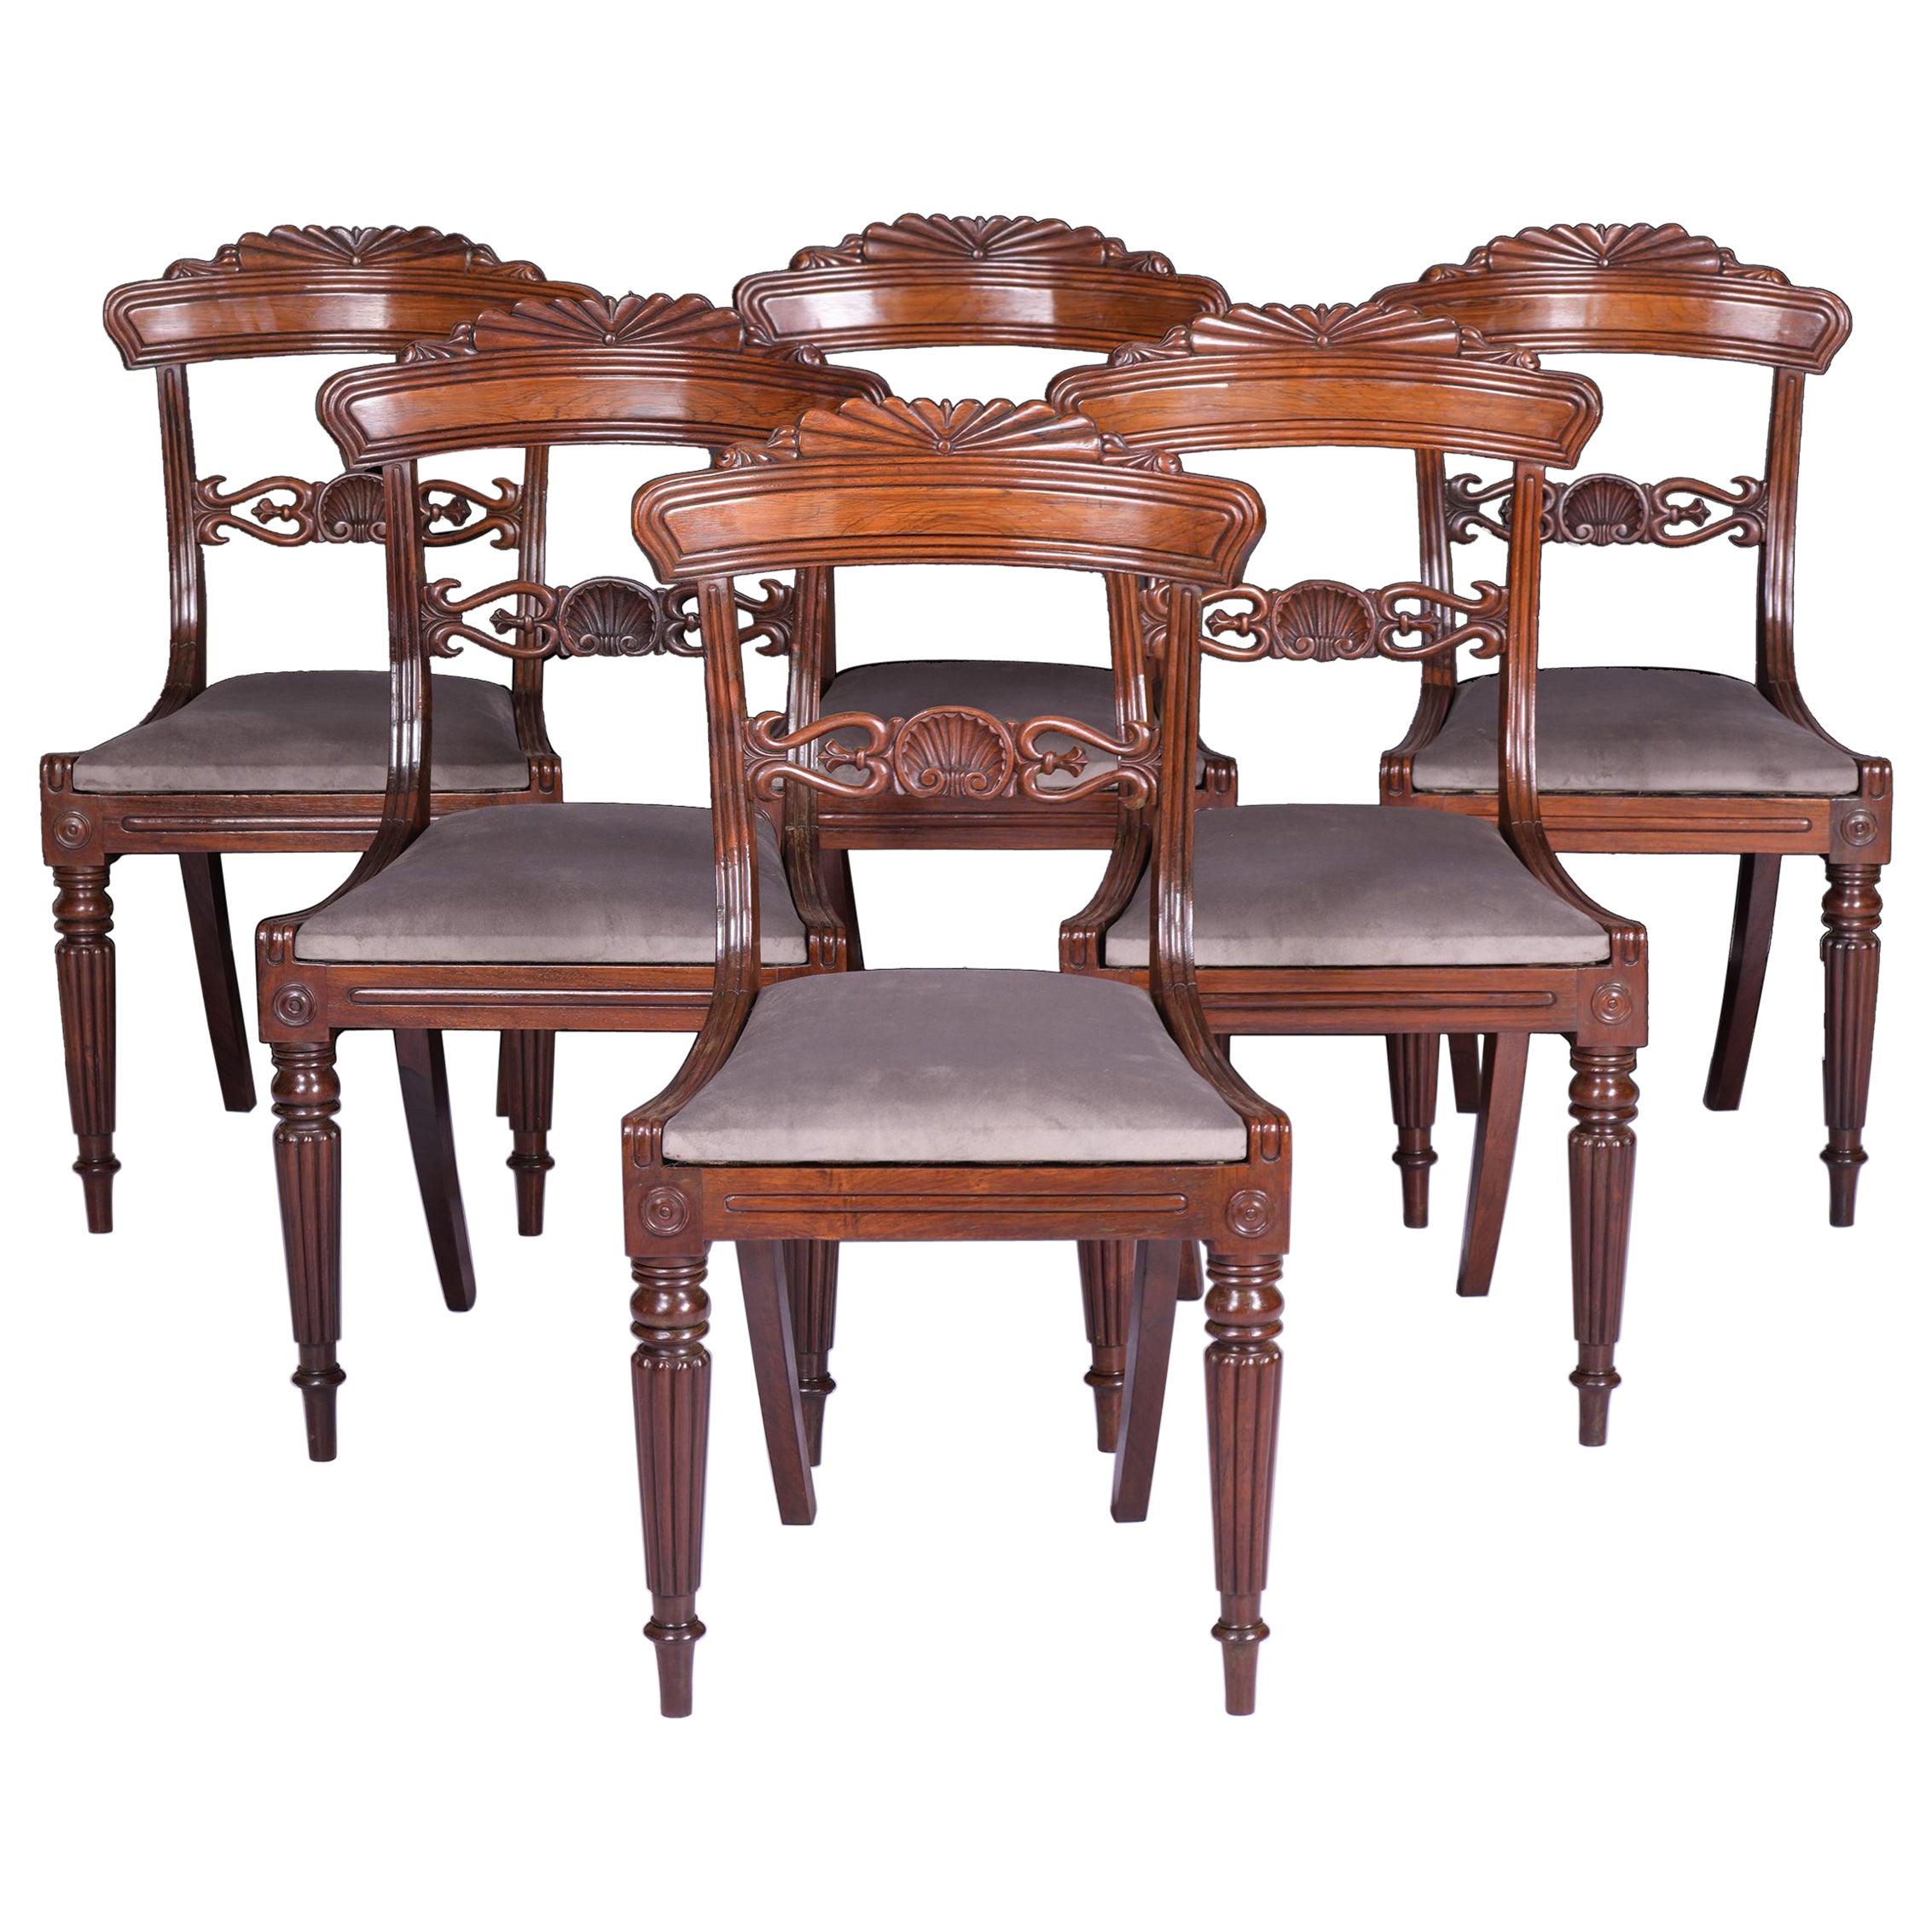 Ensemble de 6 chaises Regency anglaises du début du 19ème siècle attribuées à Gillows 